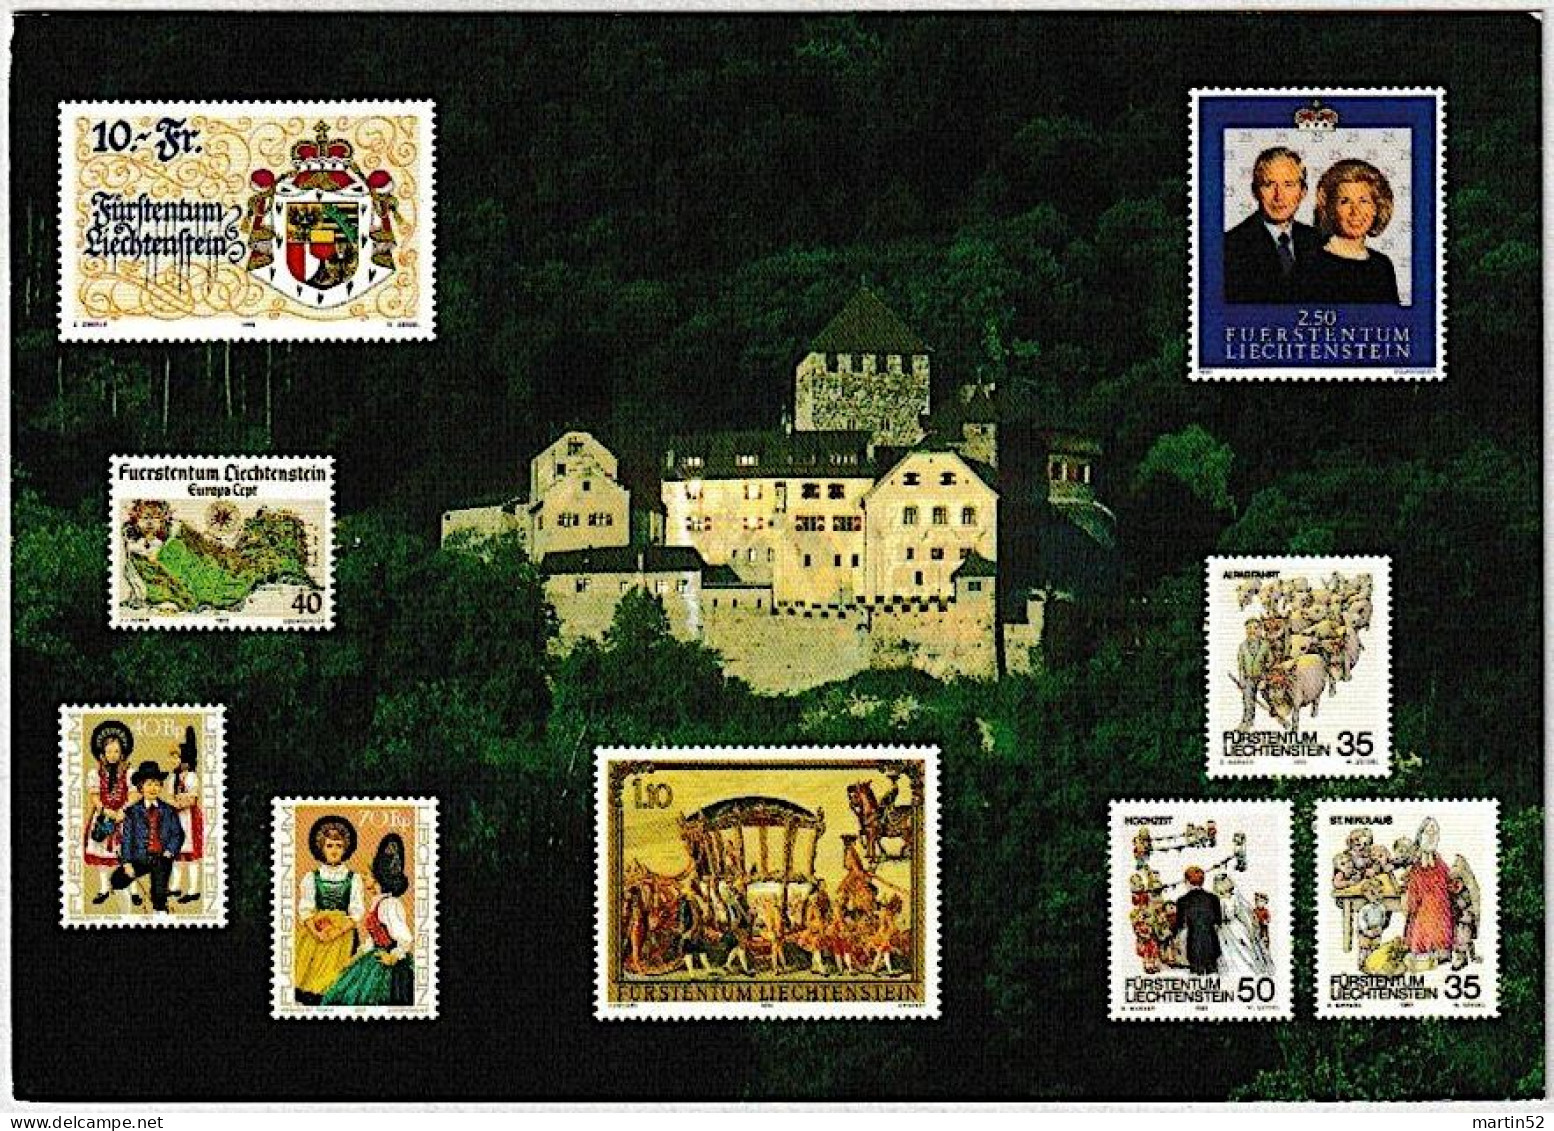 Liechtenstein 2002:  "FL-Tag An Der Expo 02 In Biel 21.9.2002" Zu 1242 Mi 1301 Yv 1242 Mit ⊙ VADUZ 25.9.02 Pour Bienne - Storia Postale